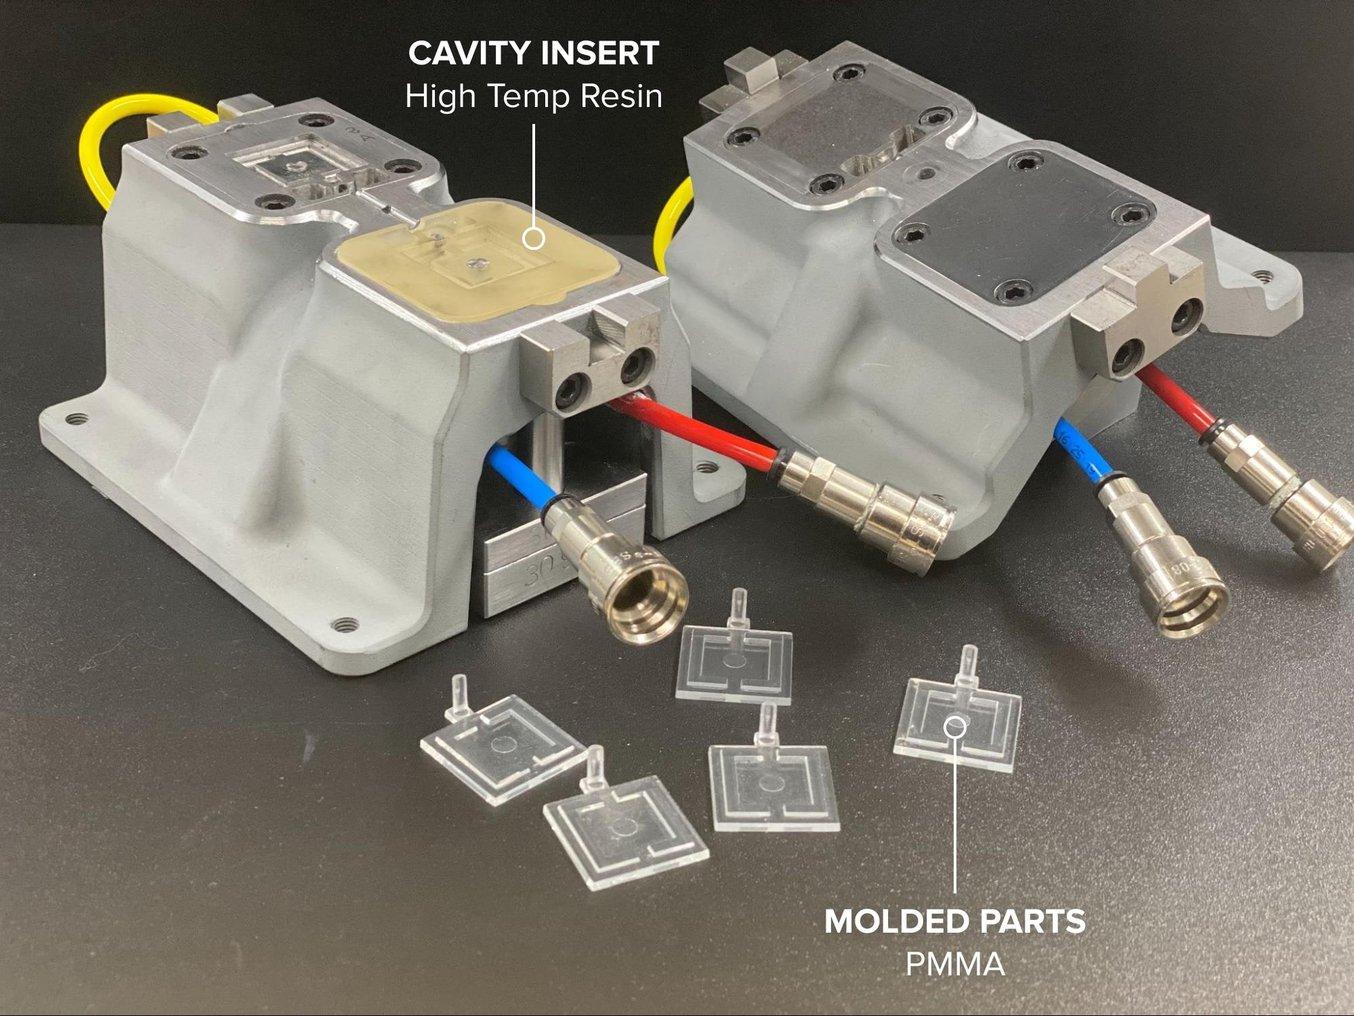 Configurazione dello stampaggio a iniezione per un componente in acrilico per automobili, utilizzando un inserto stampato in High Temp Resin.